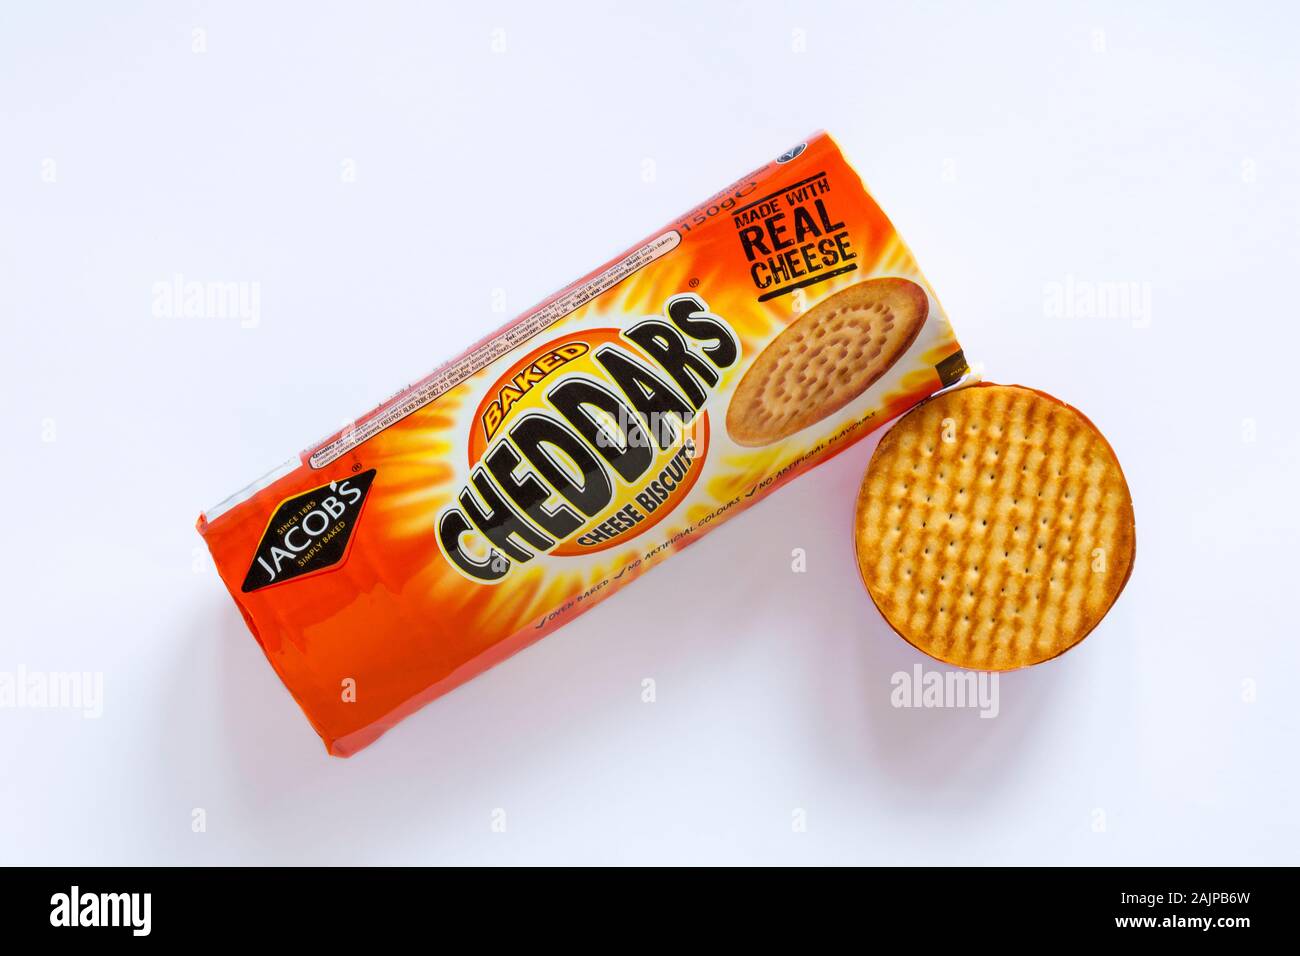 Paket von Jakob, Cheddars, gebackene Cheddars Käse Kekse, eröffnet Inhalt auf weißem Hintergrund zu zeigen Stockfoto